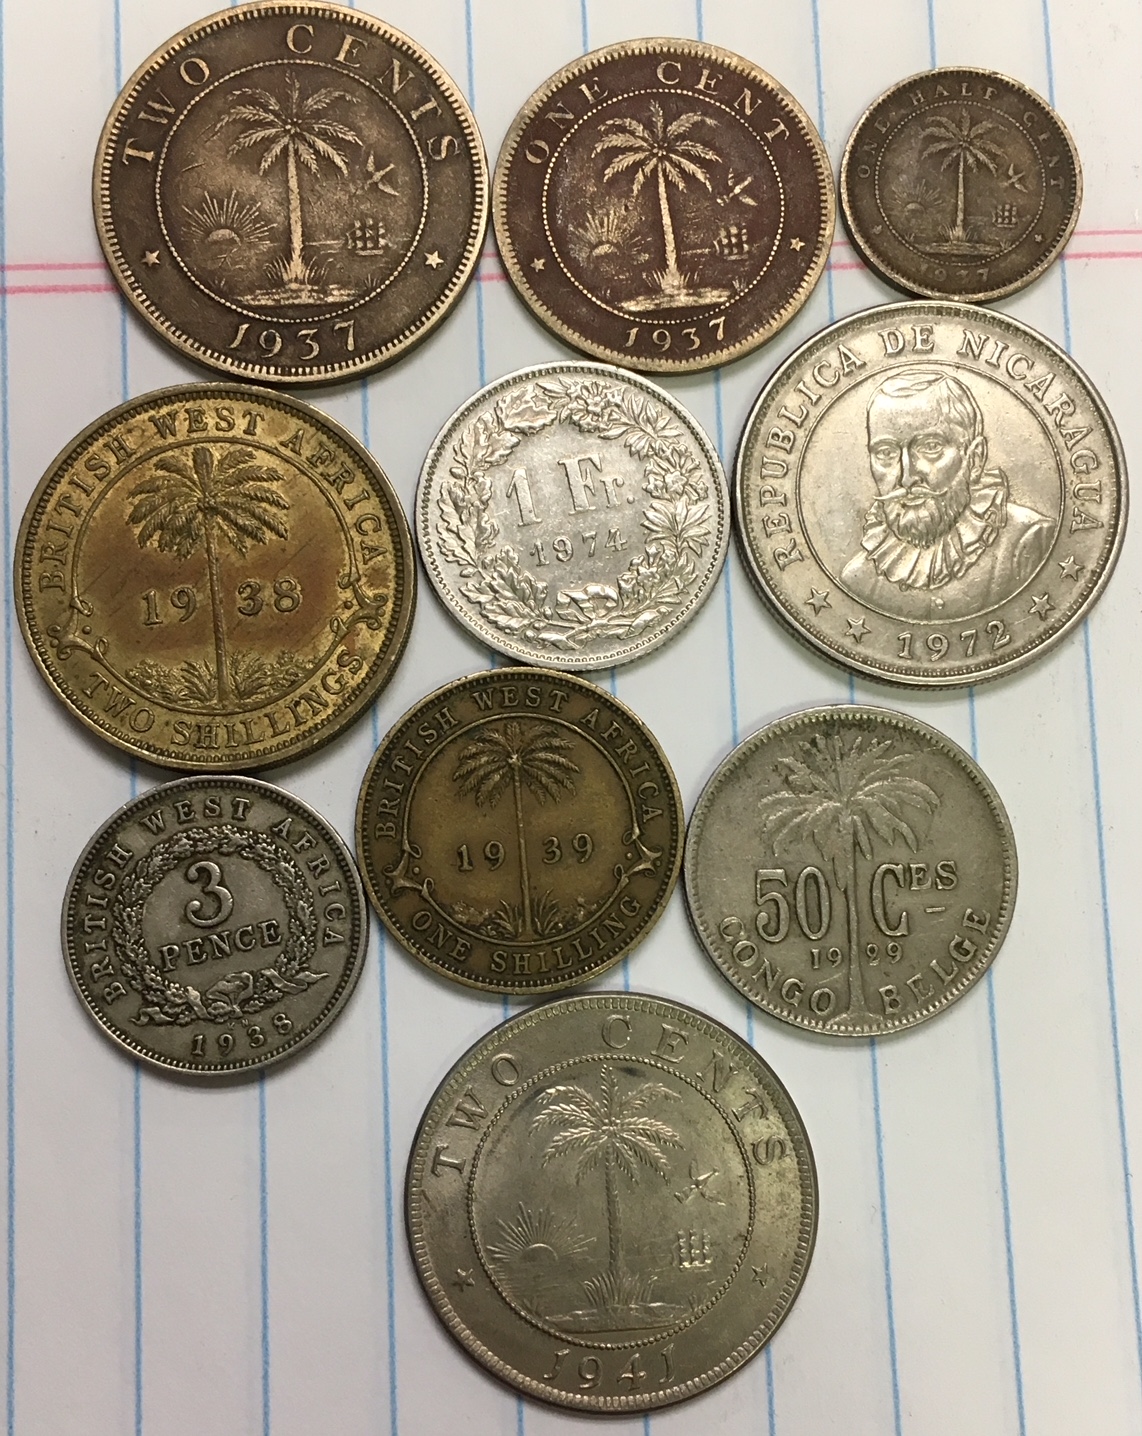 coins_20181206 (1).jpg